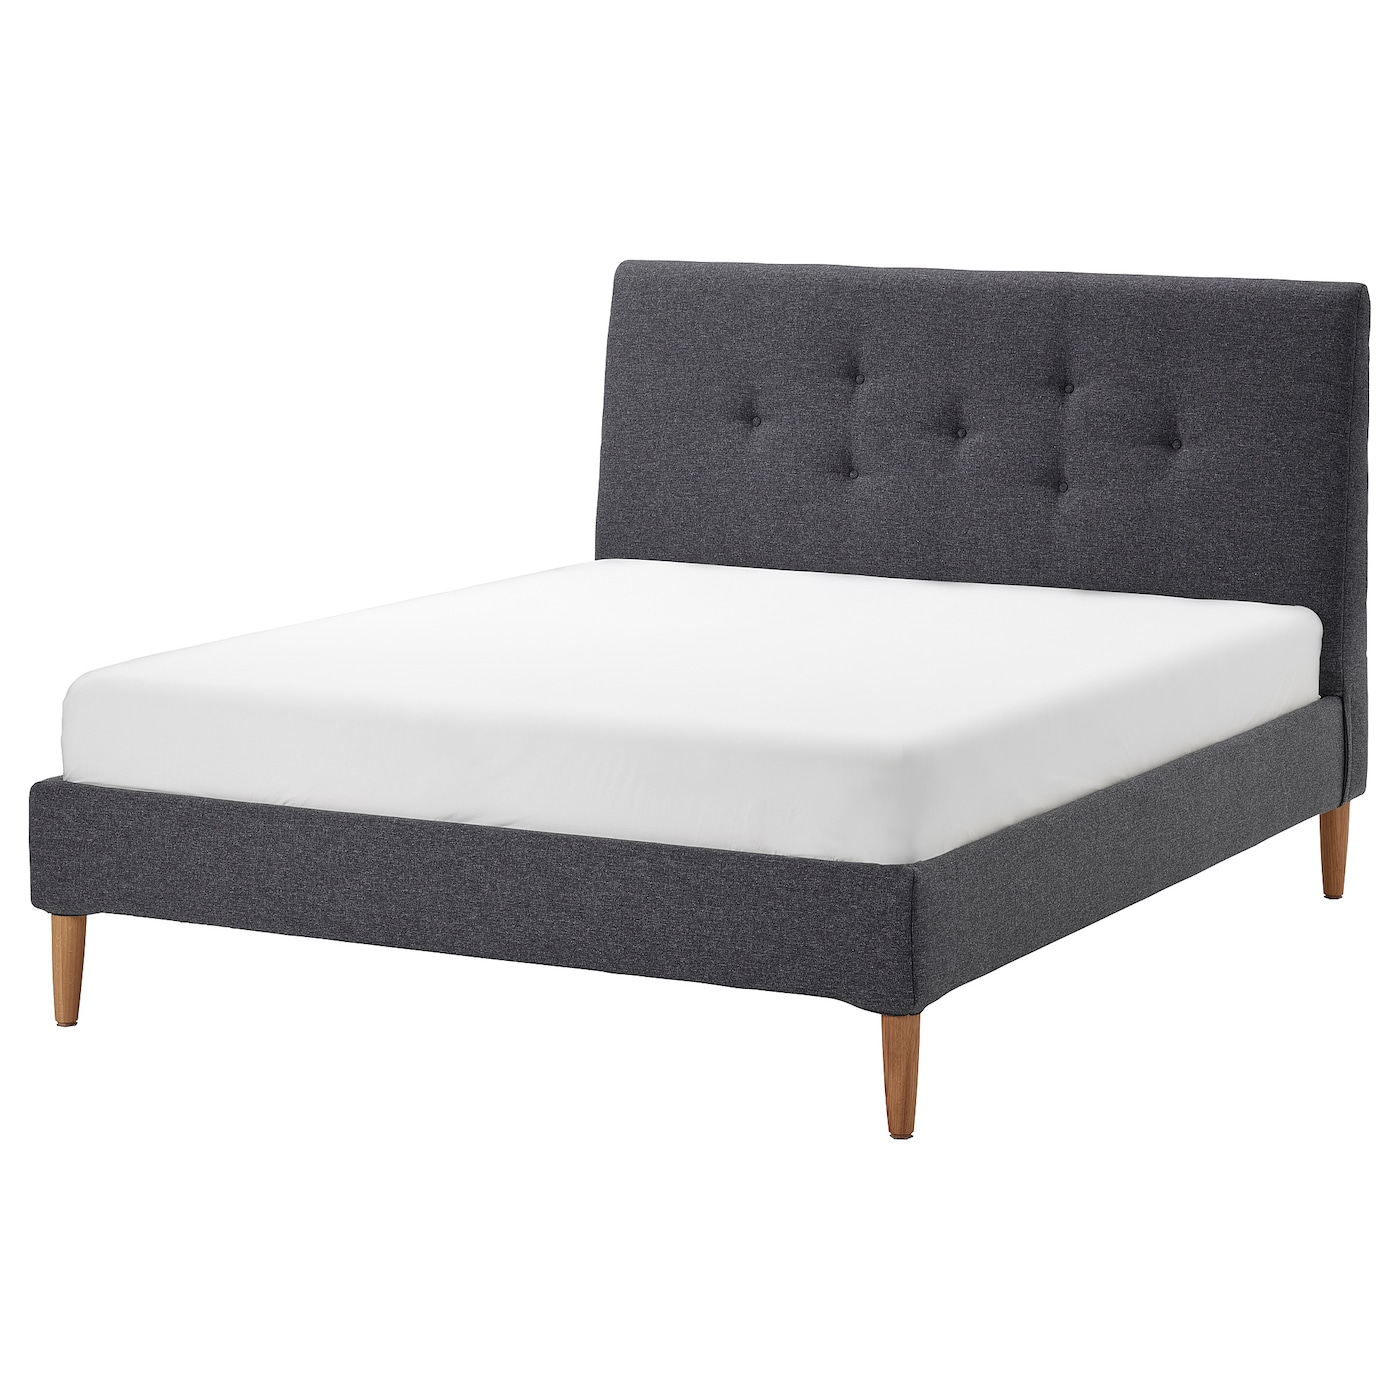 Двуспальная кровать - IKEA IDANÄS/IDANAS, 200х160 см, темно-серый, ИДАНЭС ИКЕА